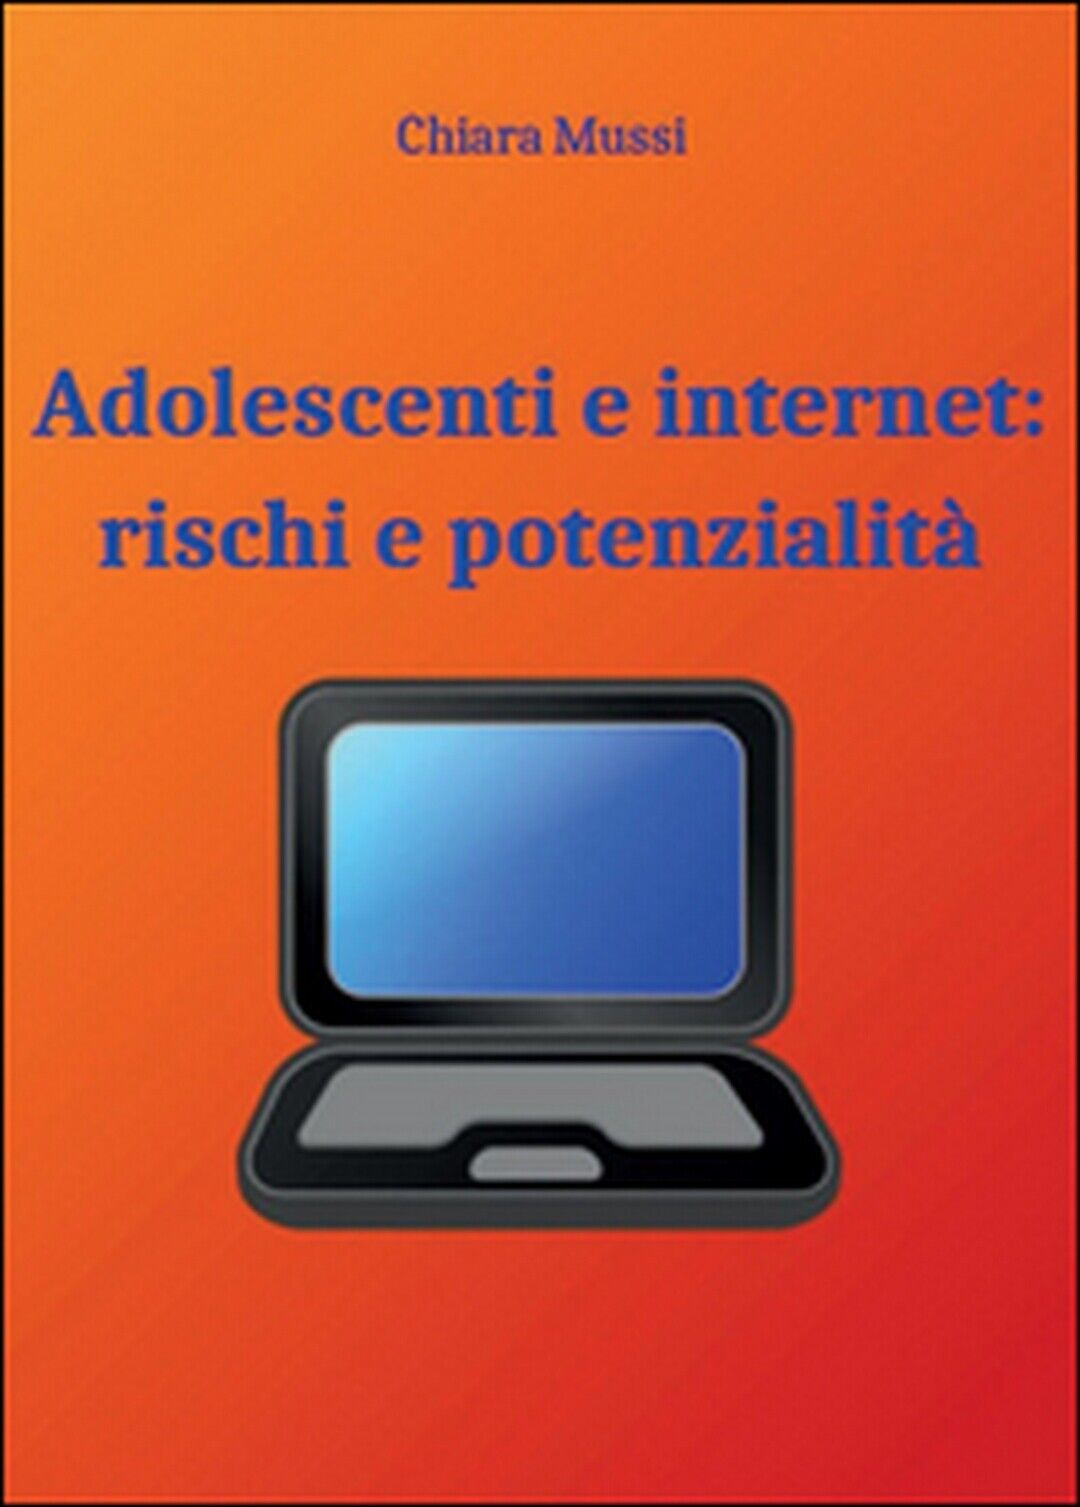 Adolescenti e internet: rischi e potenzialit?, Chiara Mussi,  2015,  Youcanprint